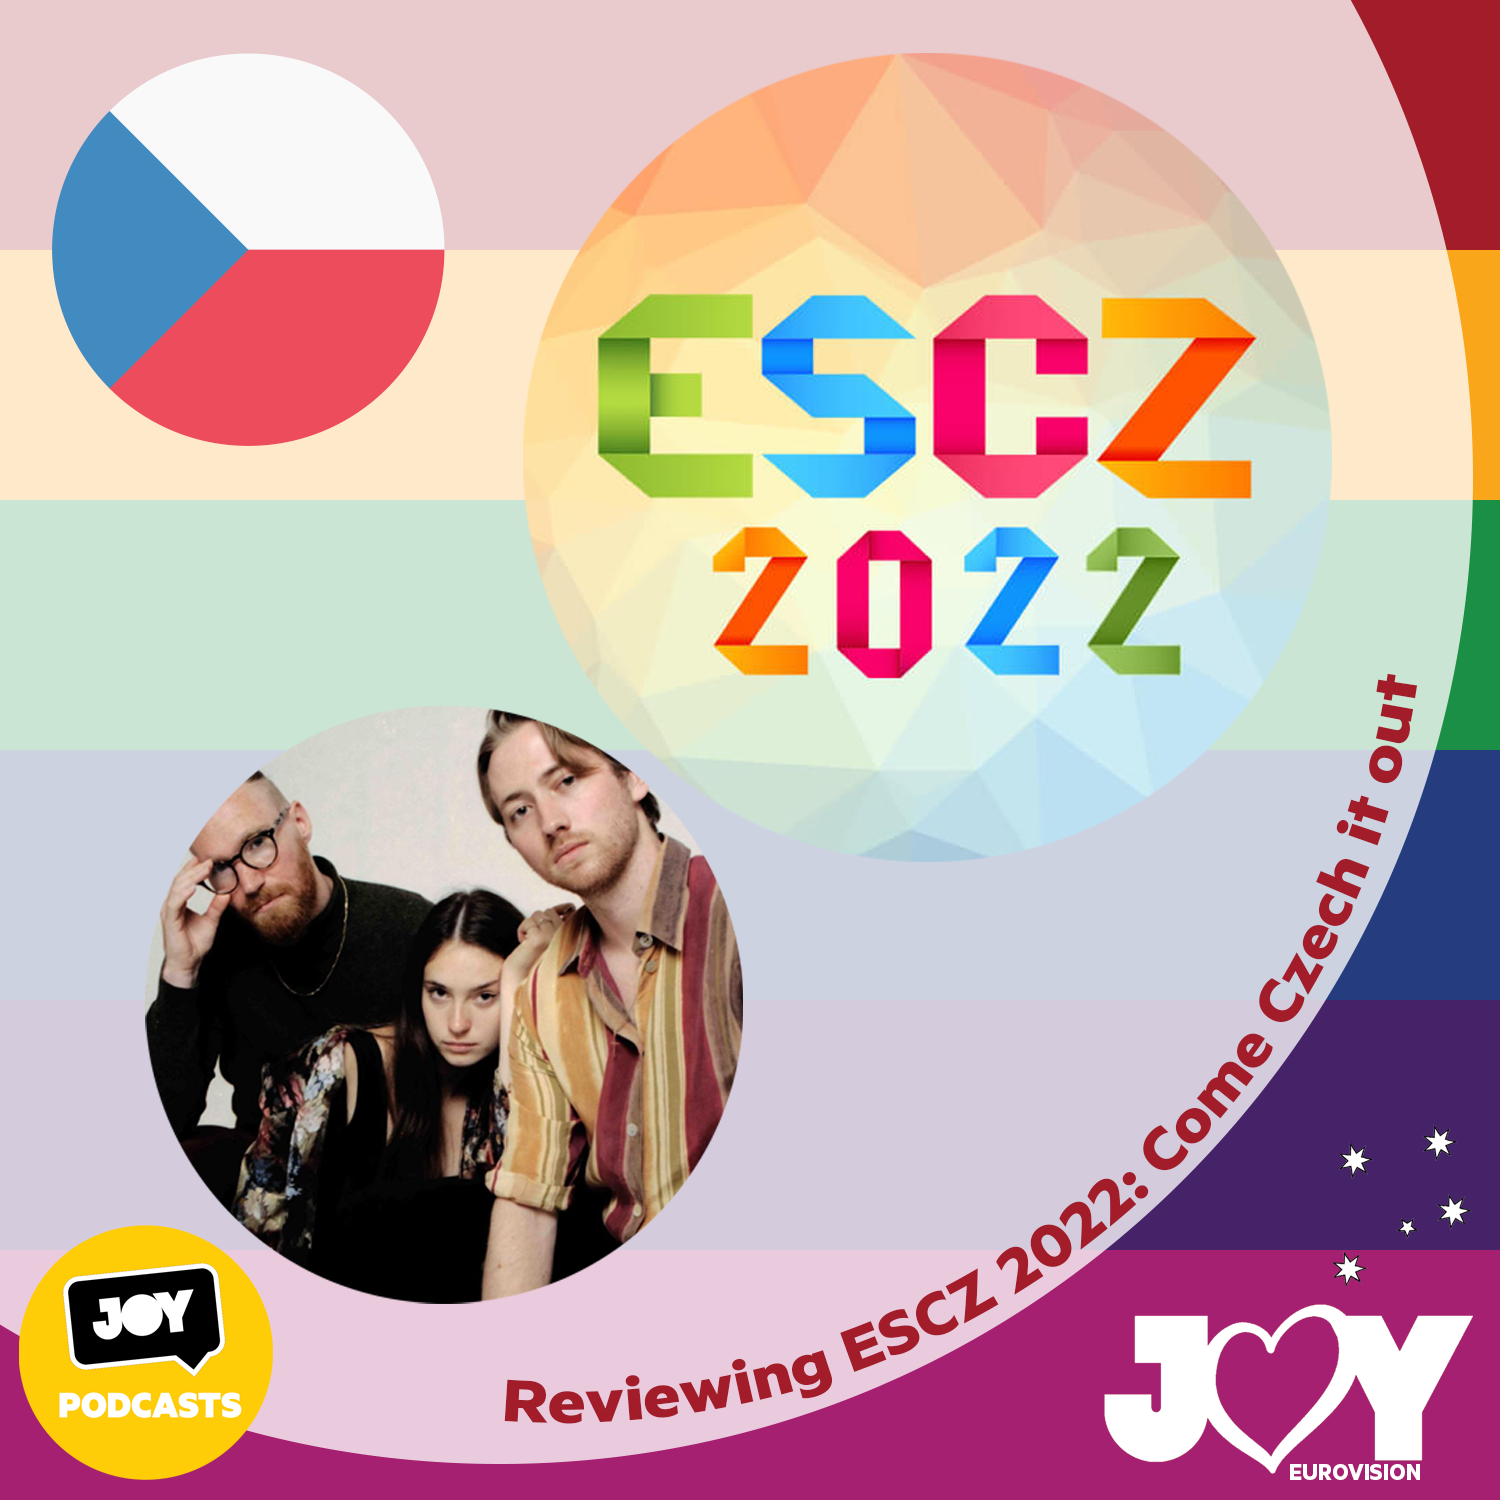 🇨🇿 Reviewing ESCZ 2022: Come Czech it out